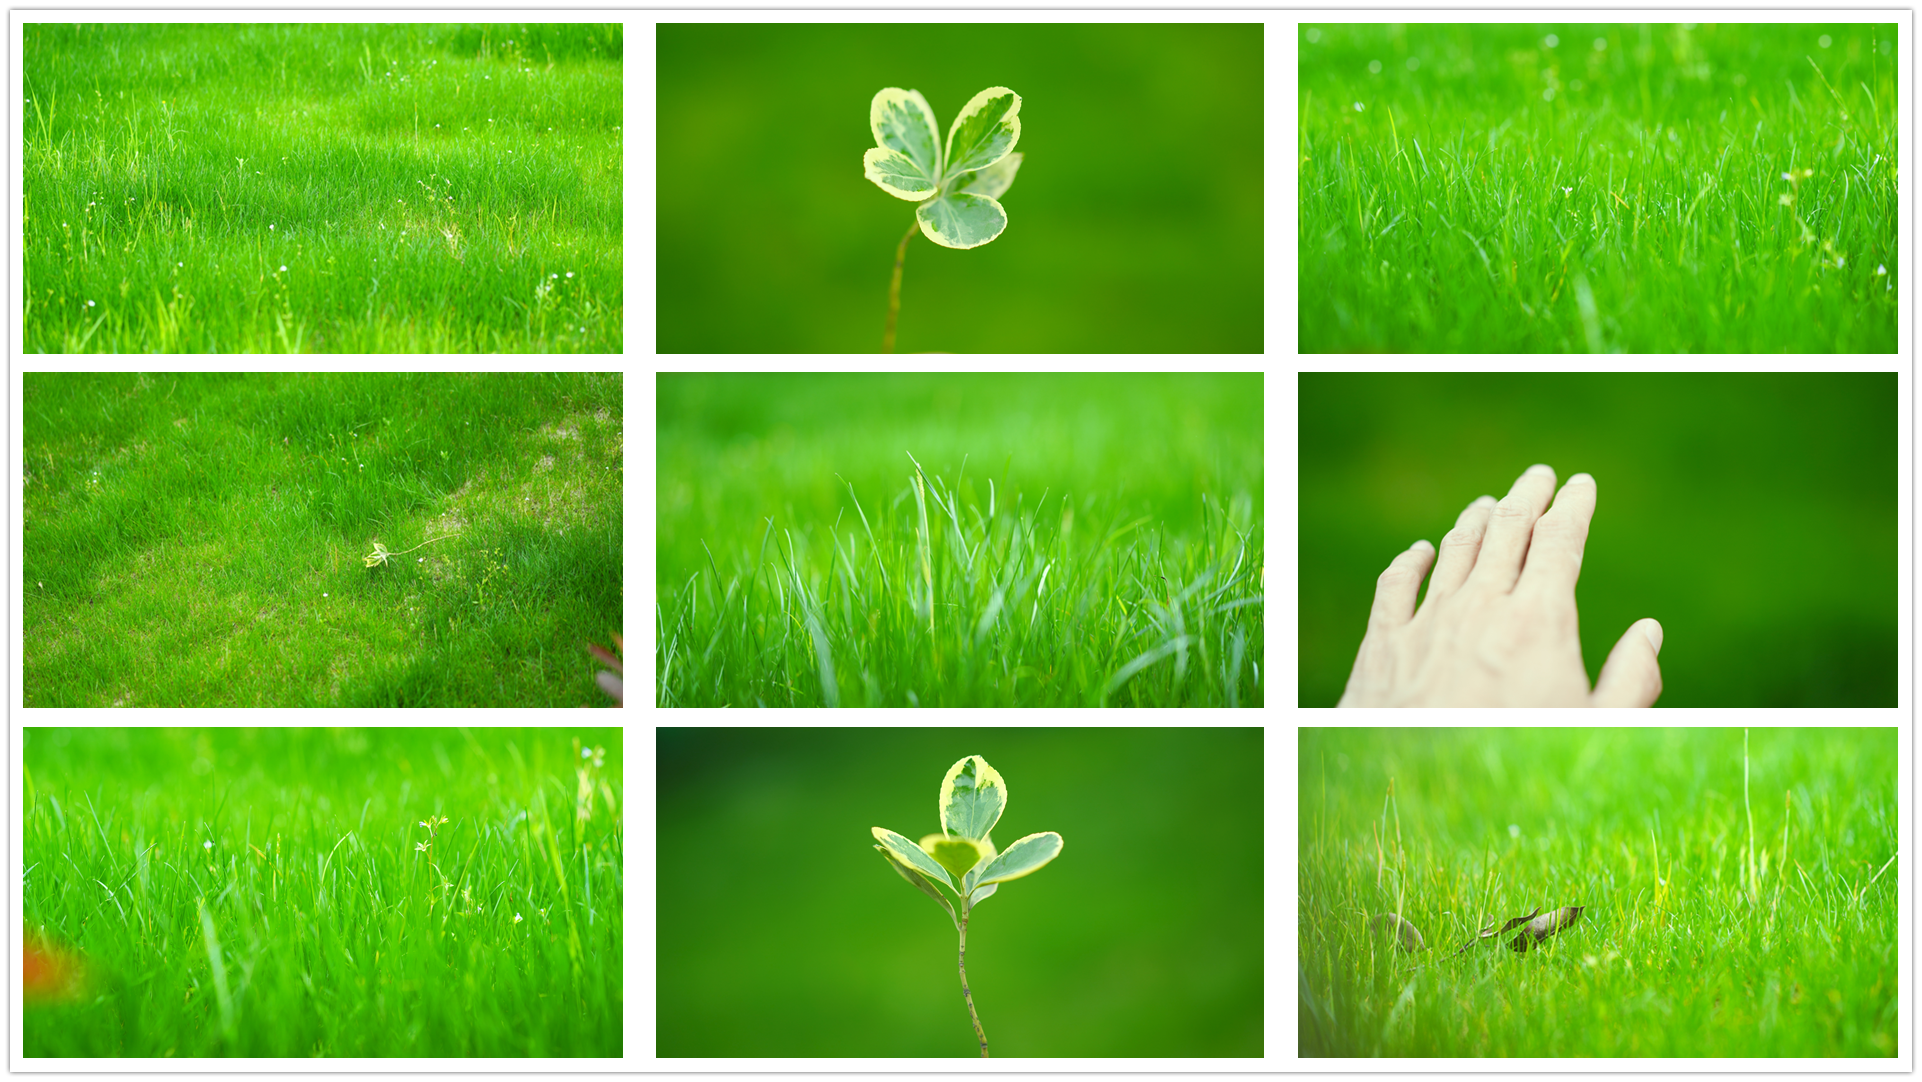 小草青青草地草坪干净唯美清新自然文艺空镜头绿色环保草丛写意意境